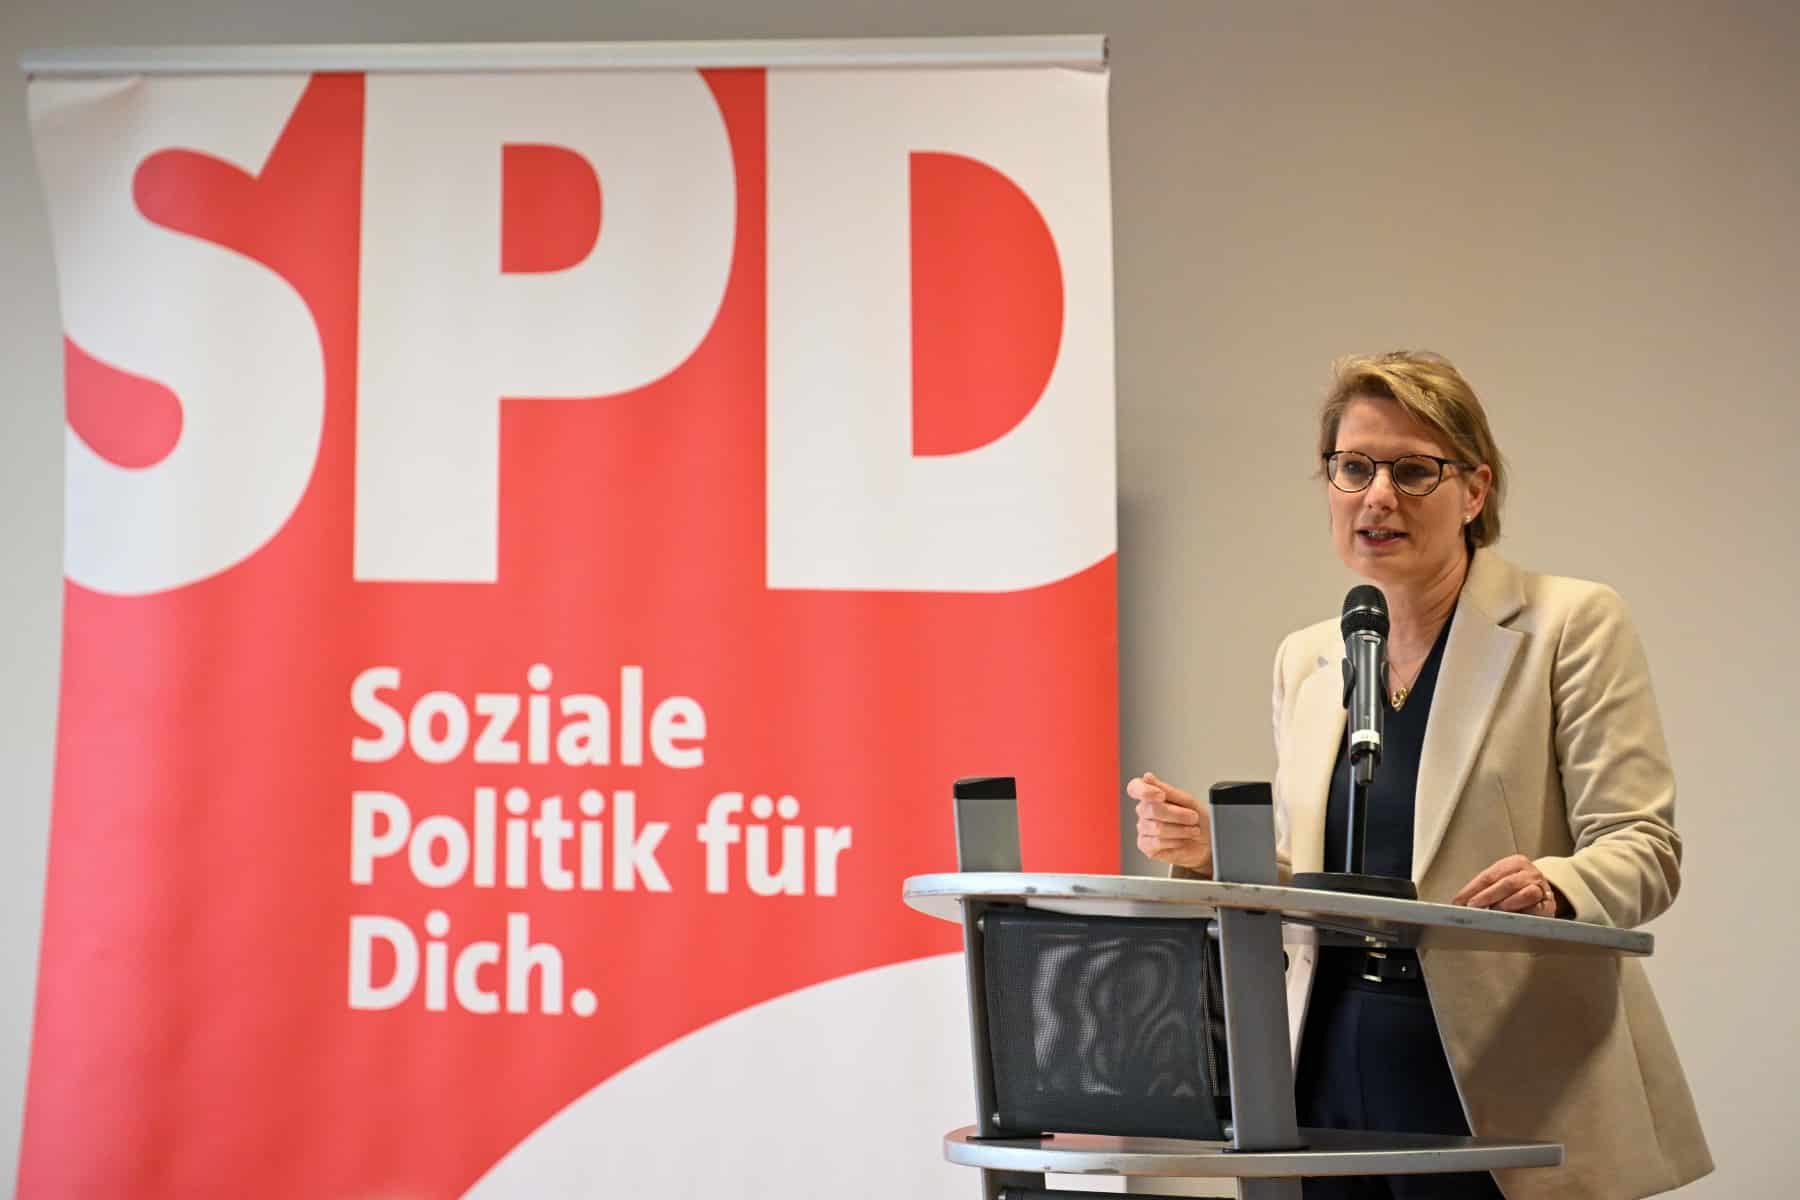 SPD_16616